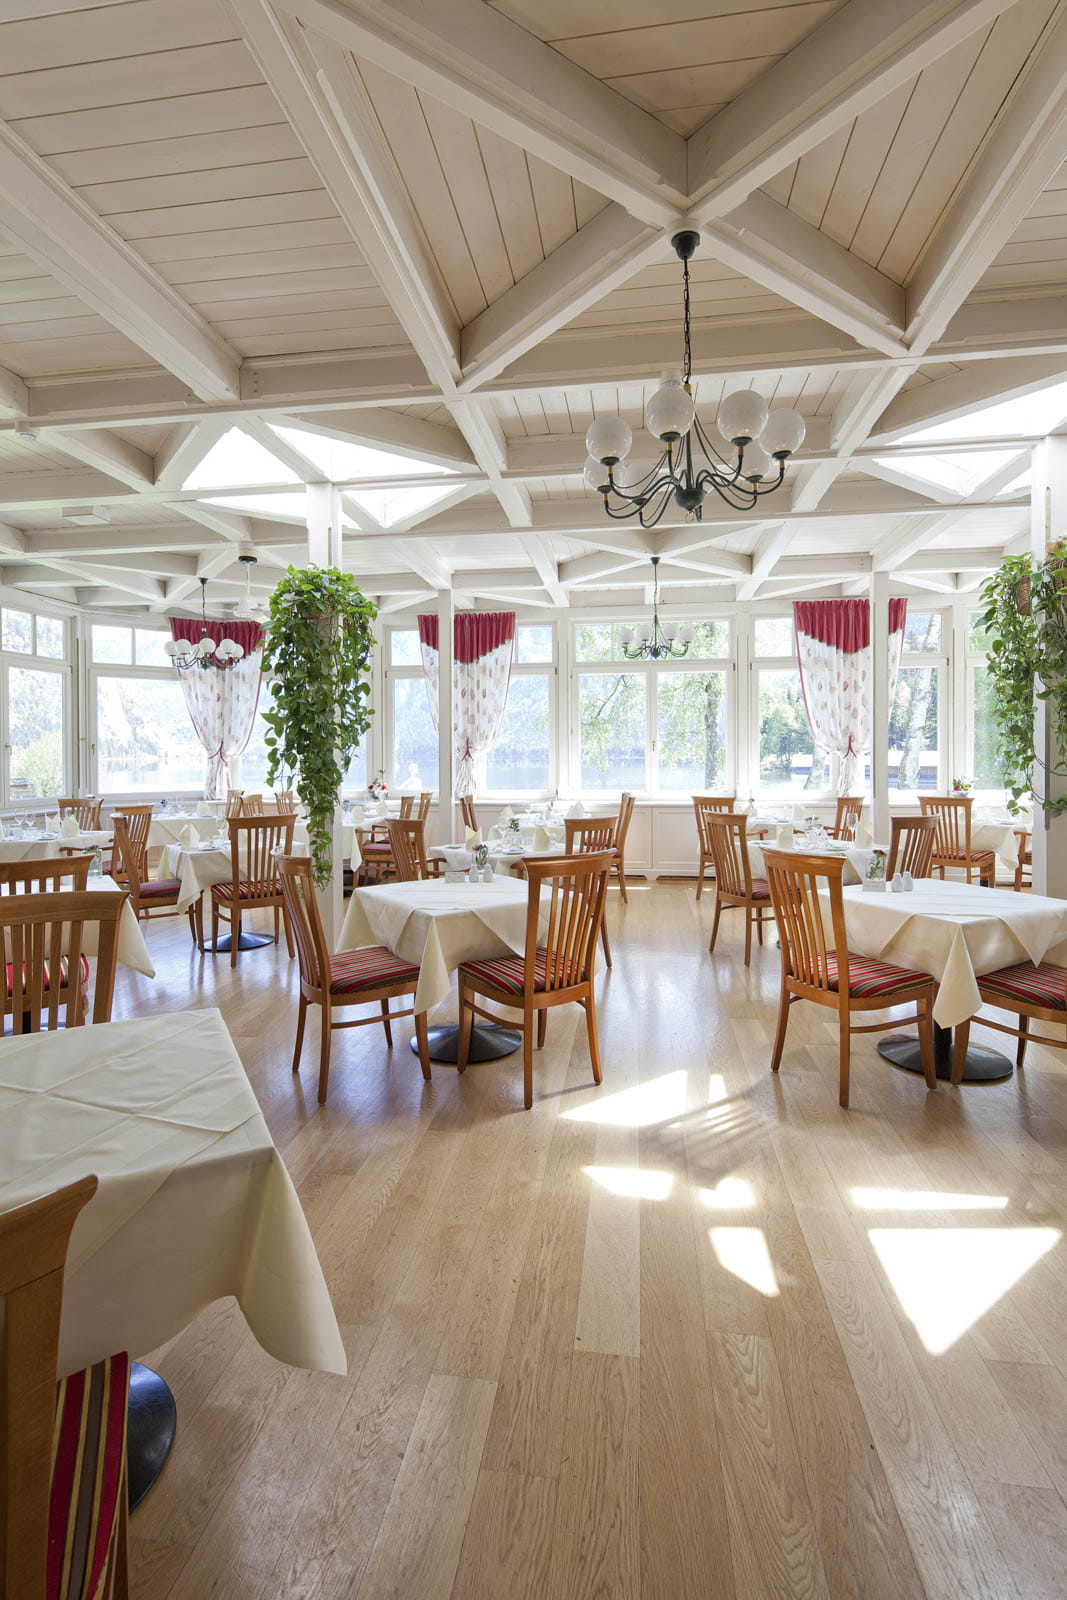 Lassen Sie sich kulinarisch verwöhnen im Restaurant der Seevilla Altaussee inmitten einer malerischen Landschaft